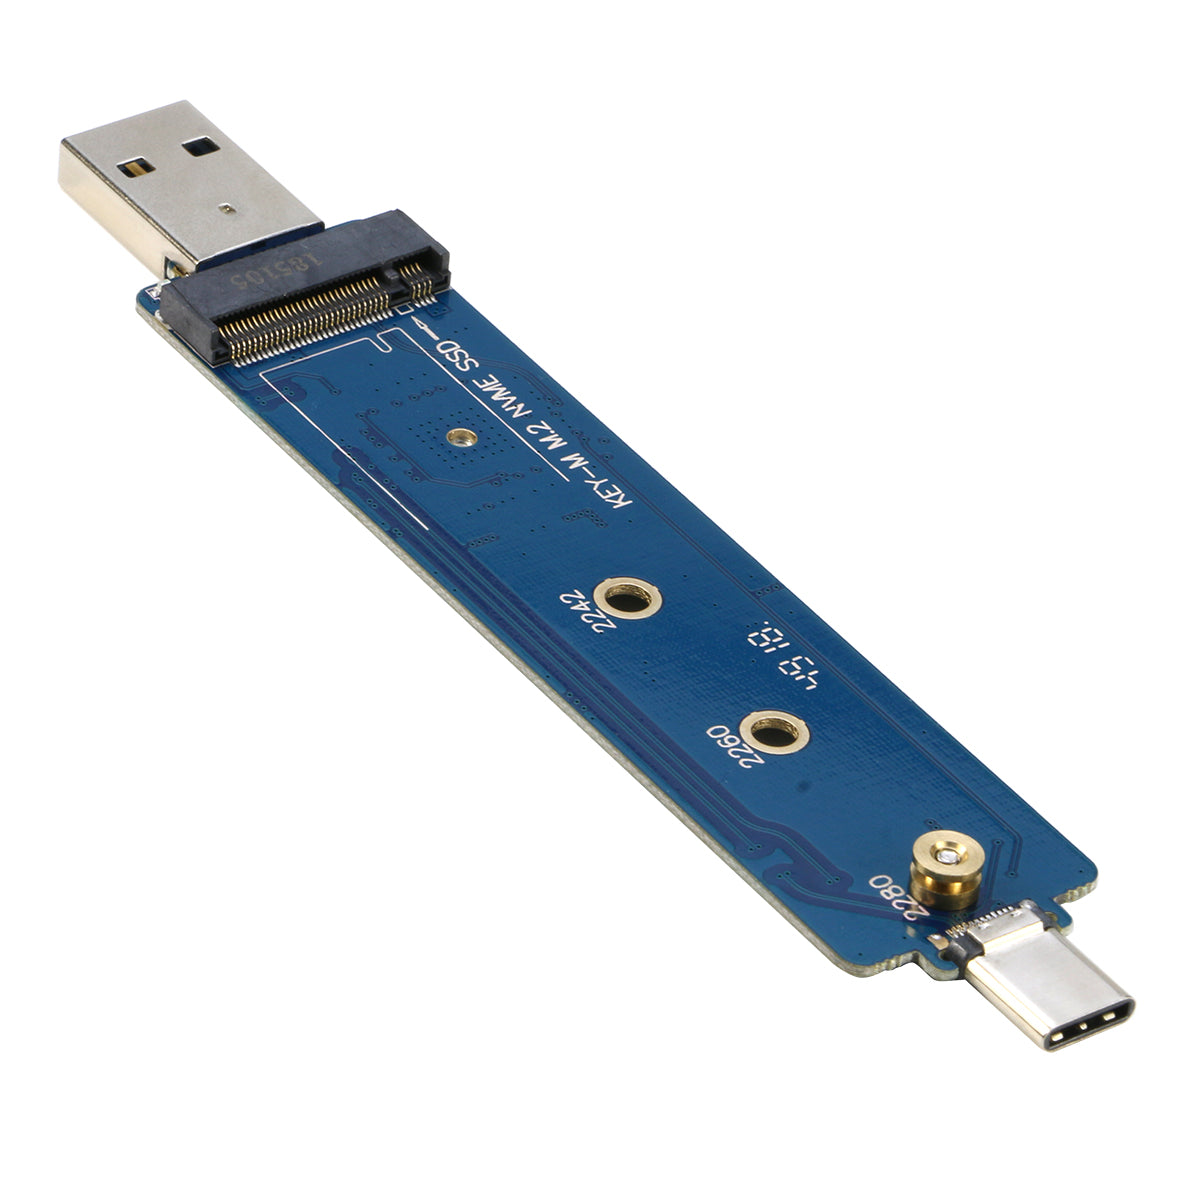 Adaptateur SSD M2 M.2 PCIE NVME SSD Converter Card pour Apple